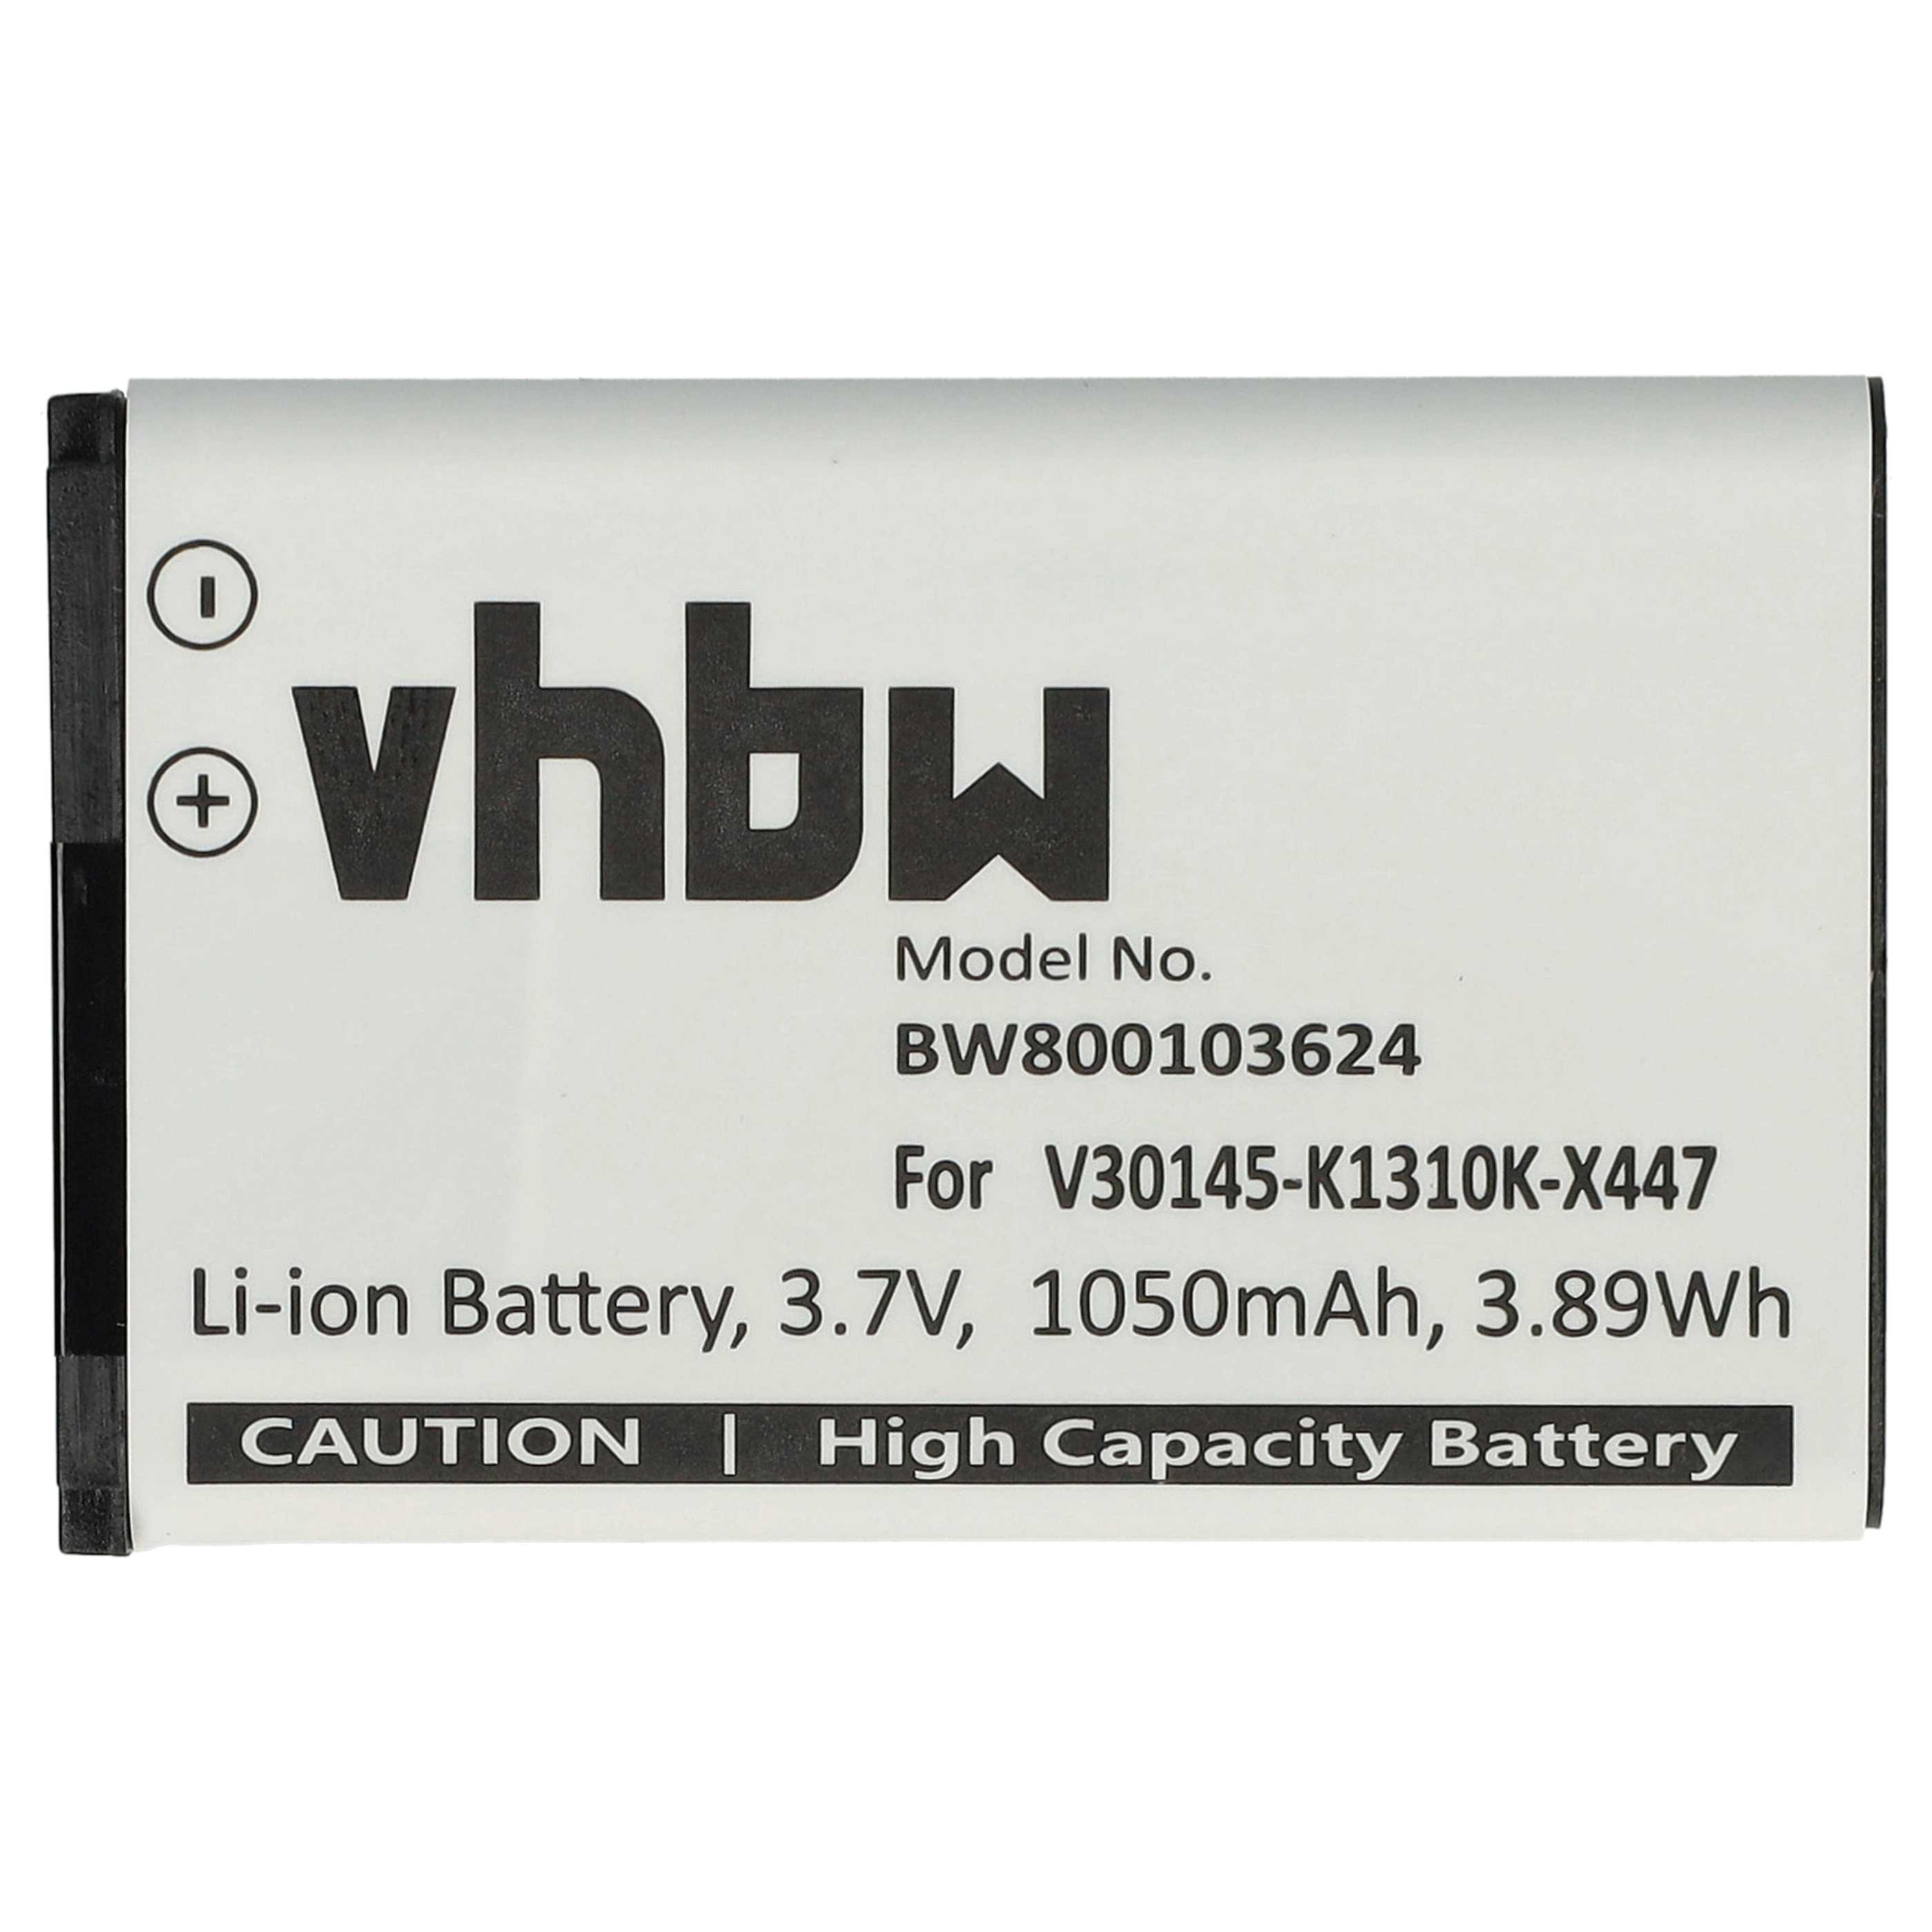 Batterie remplace Siemens V30145-K1310K-X447 pour téléphone - 1050mAh 3,7V Li-ion